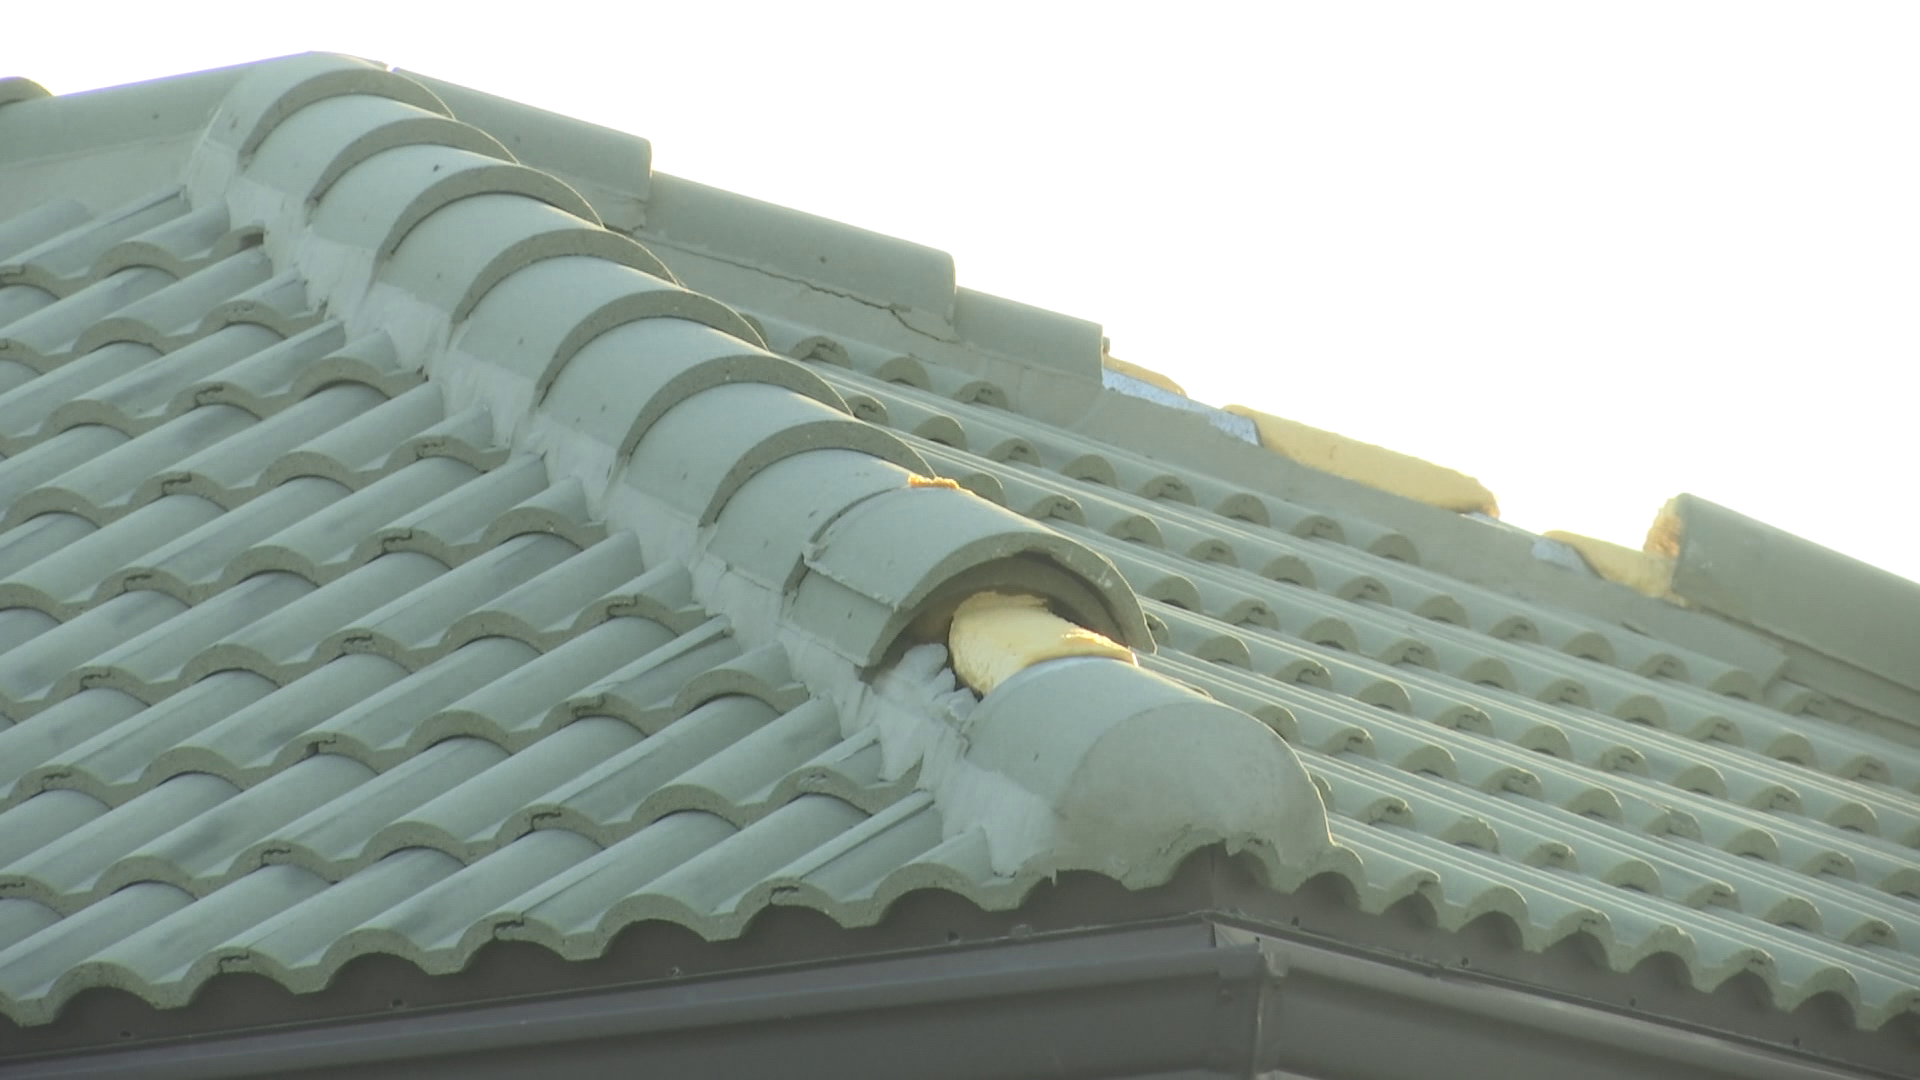 Cape roof mishap